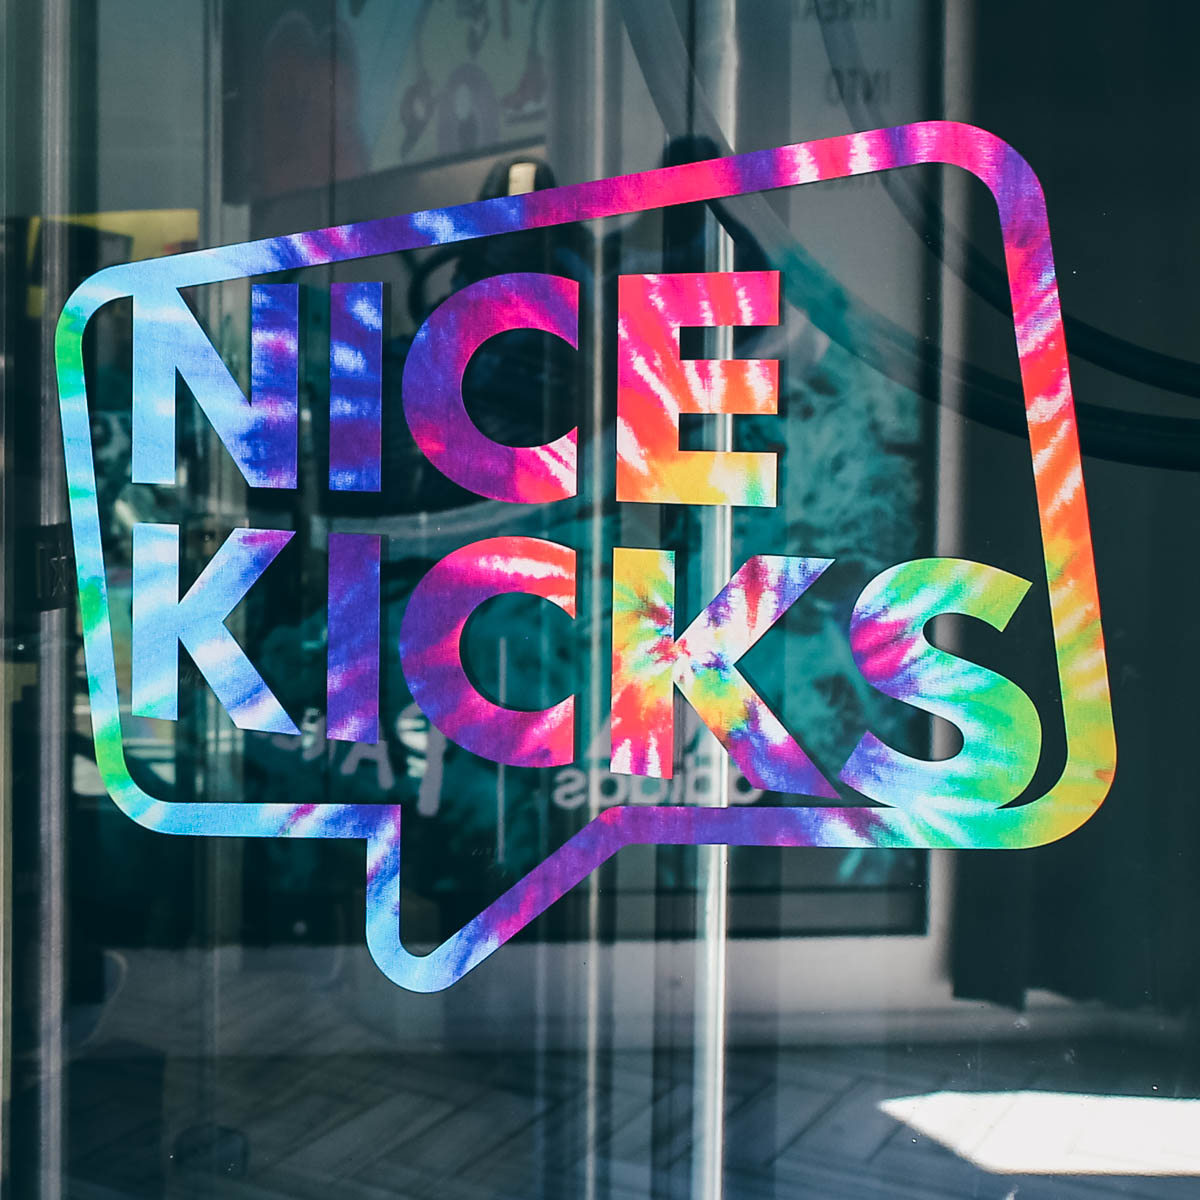 Nice Kicks 